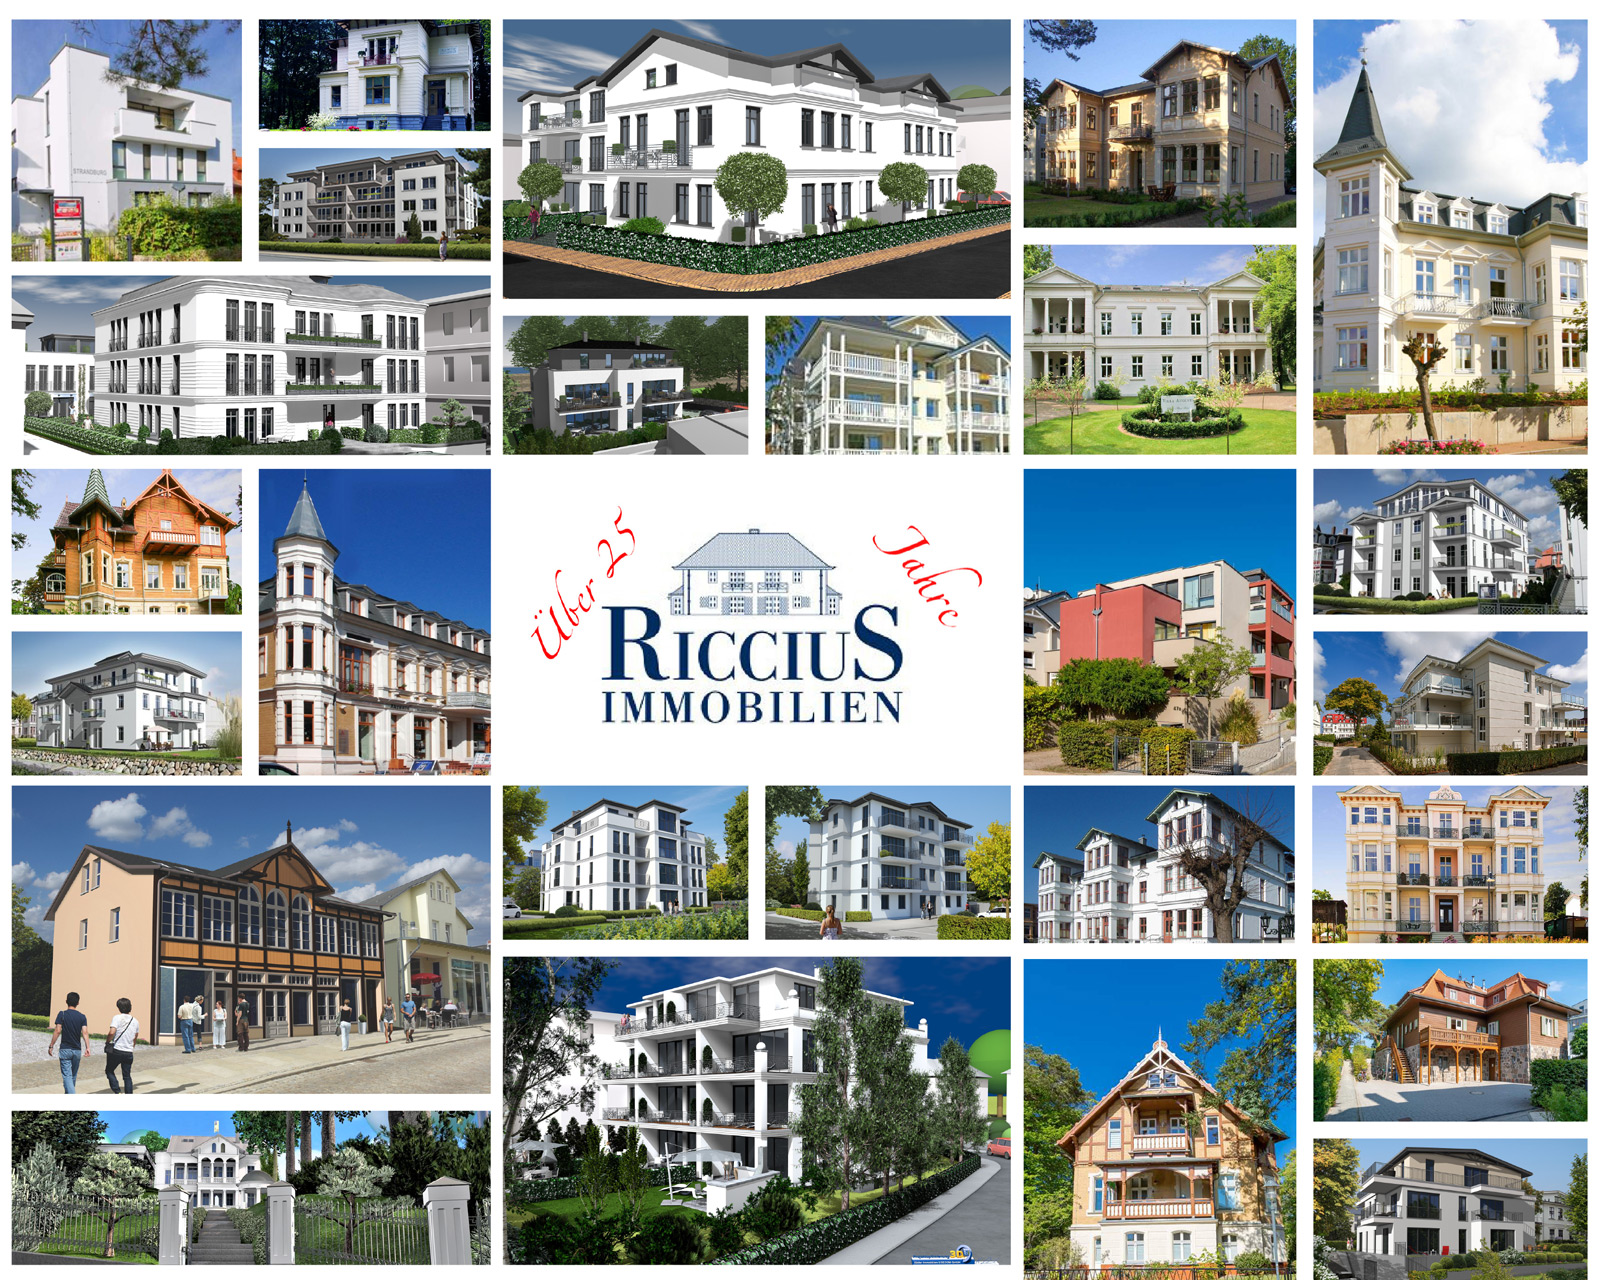 (c) Riccius-immobilien.de